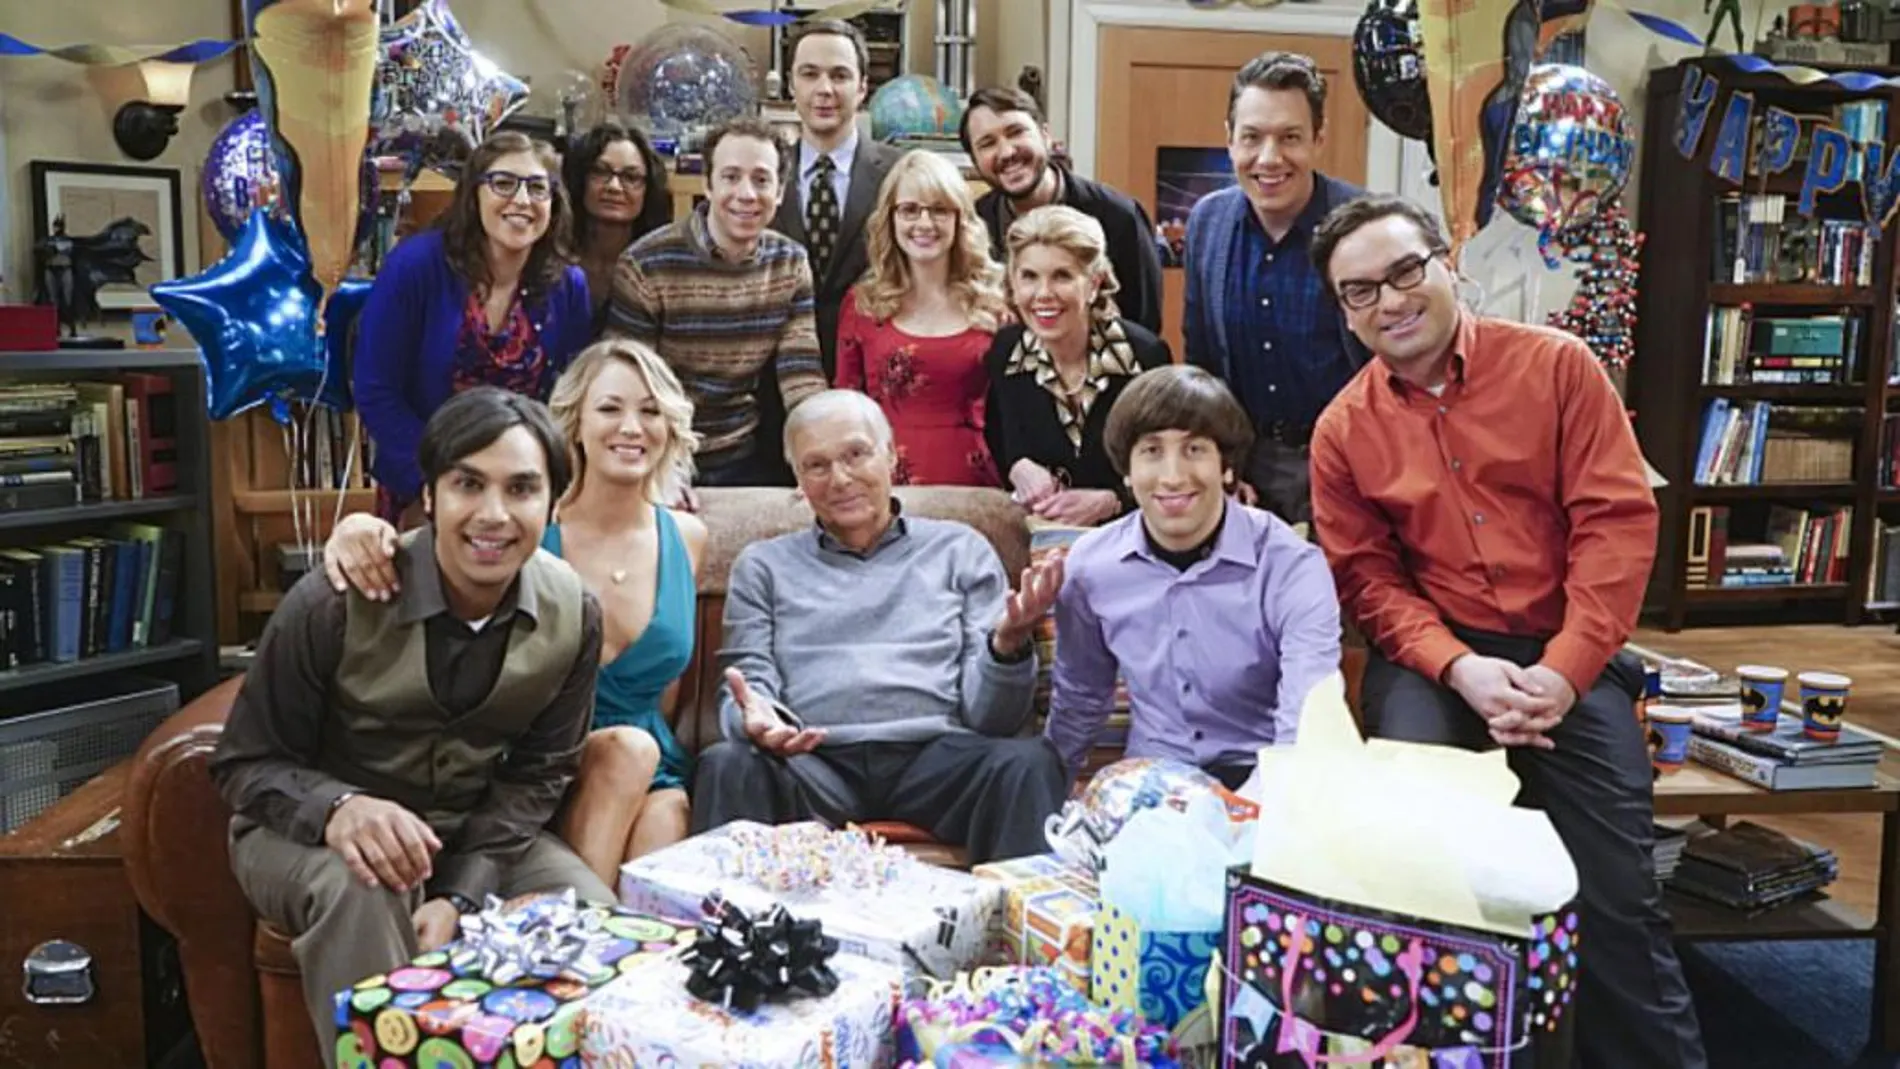 Adam West, junto a los actores de la serie “The Big Bang Theory”